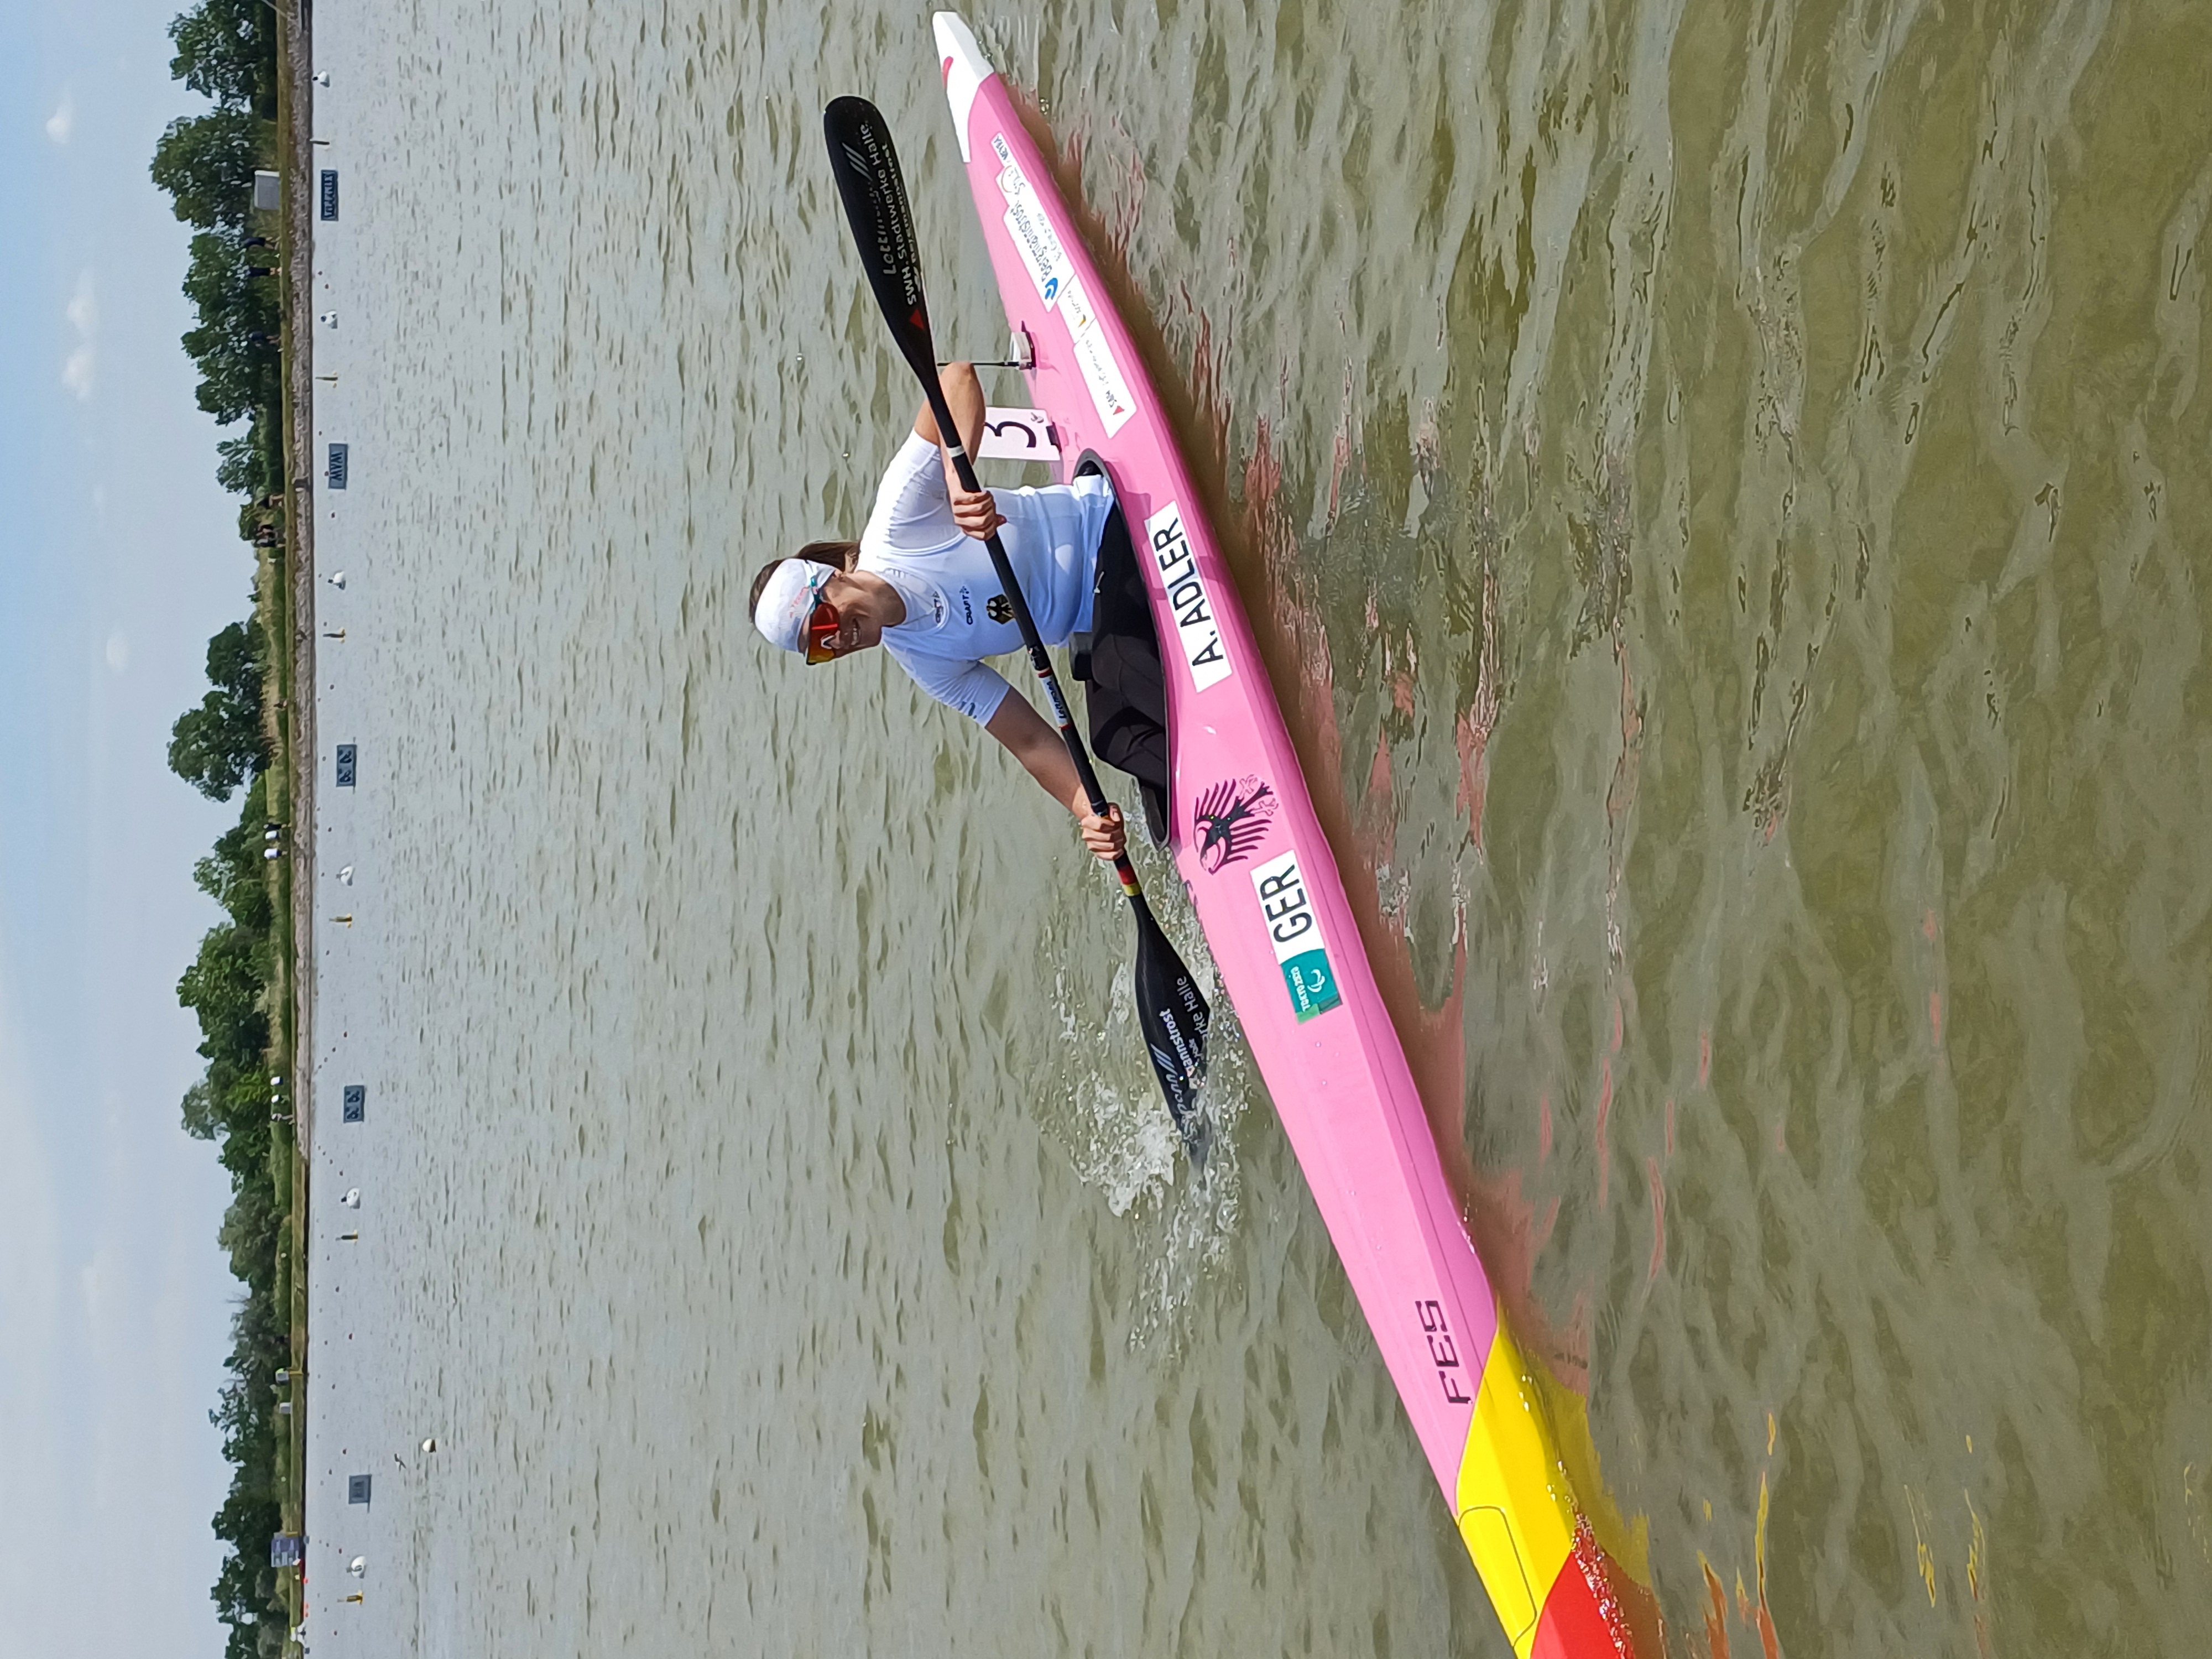 Anja in ihrem rosafarbenen Kanu mit einem Doppelpaddel und fährt auf einem See. Sie lächelt und trägt eine Sonnenbrille sowie ein weißes Kopftuch.